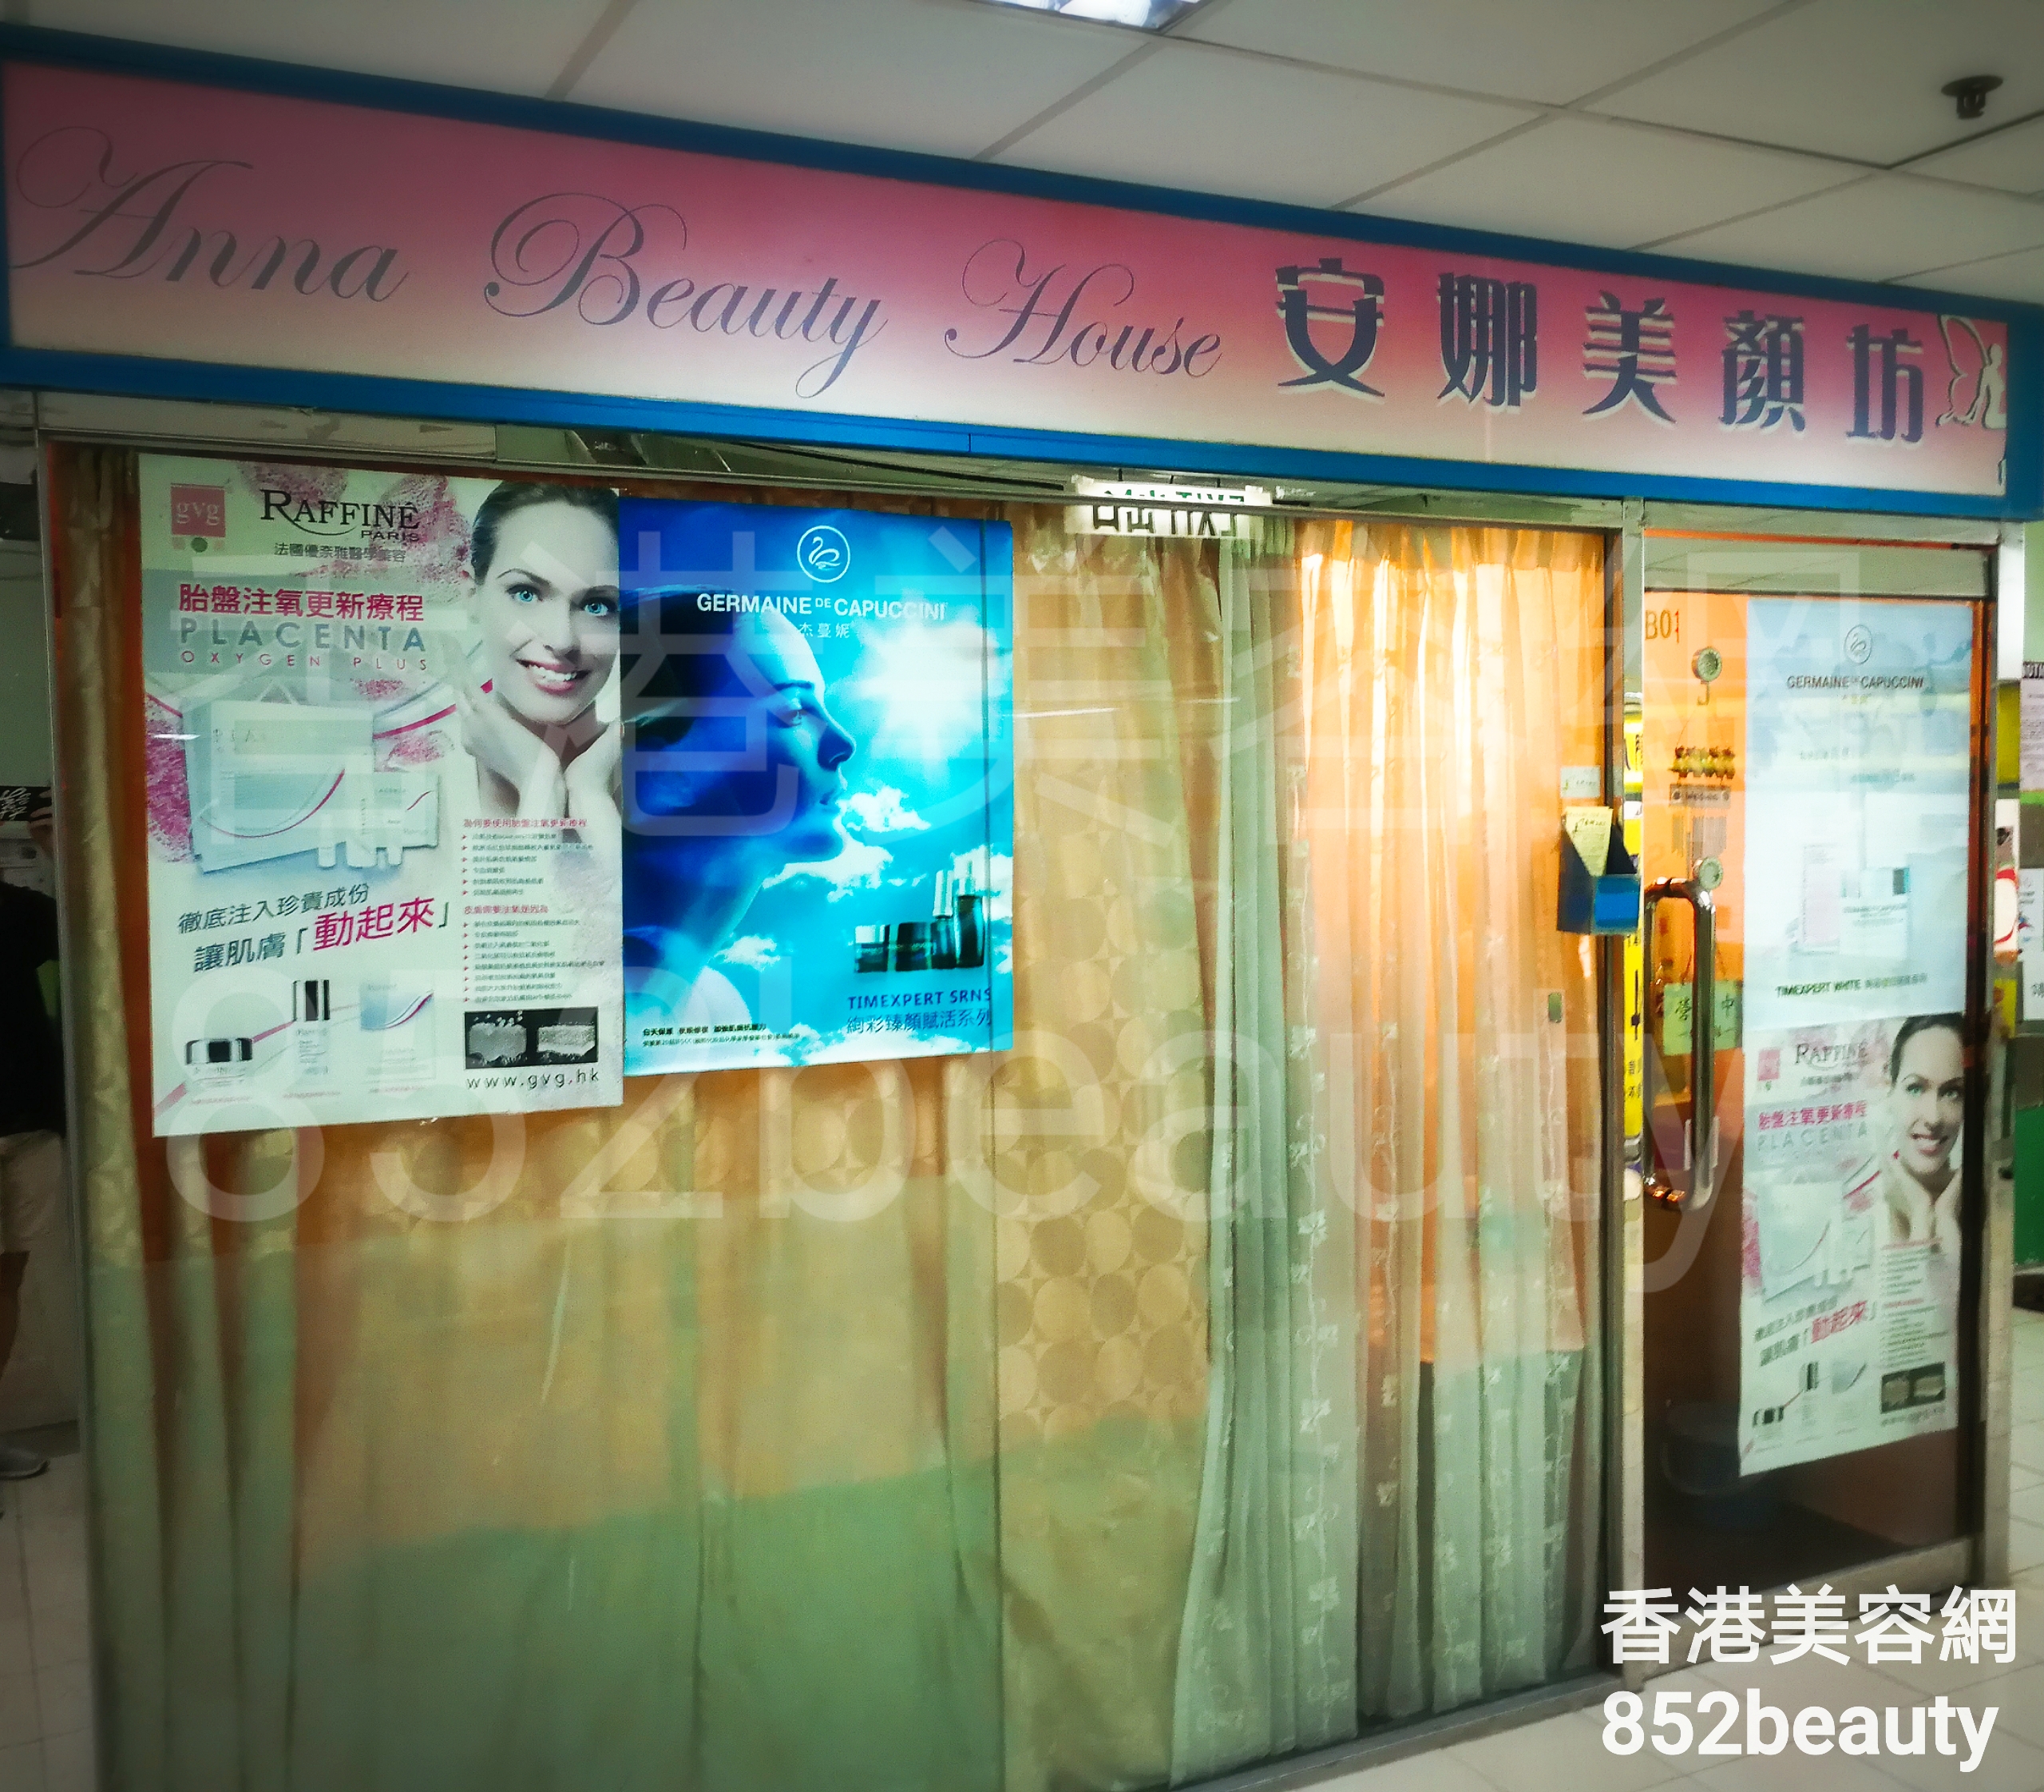 香港美容網 Hong Kong Beauty Salon 美容院 / 美容師: ANNA BEAUTY HOUSE 安娜美顏坊